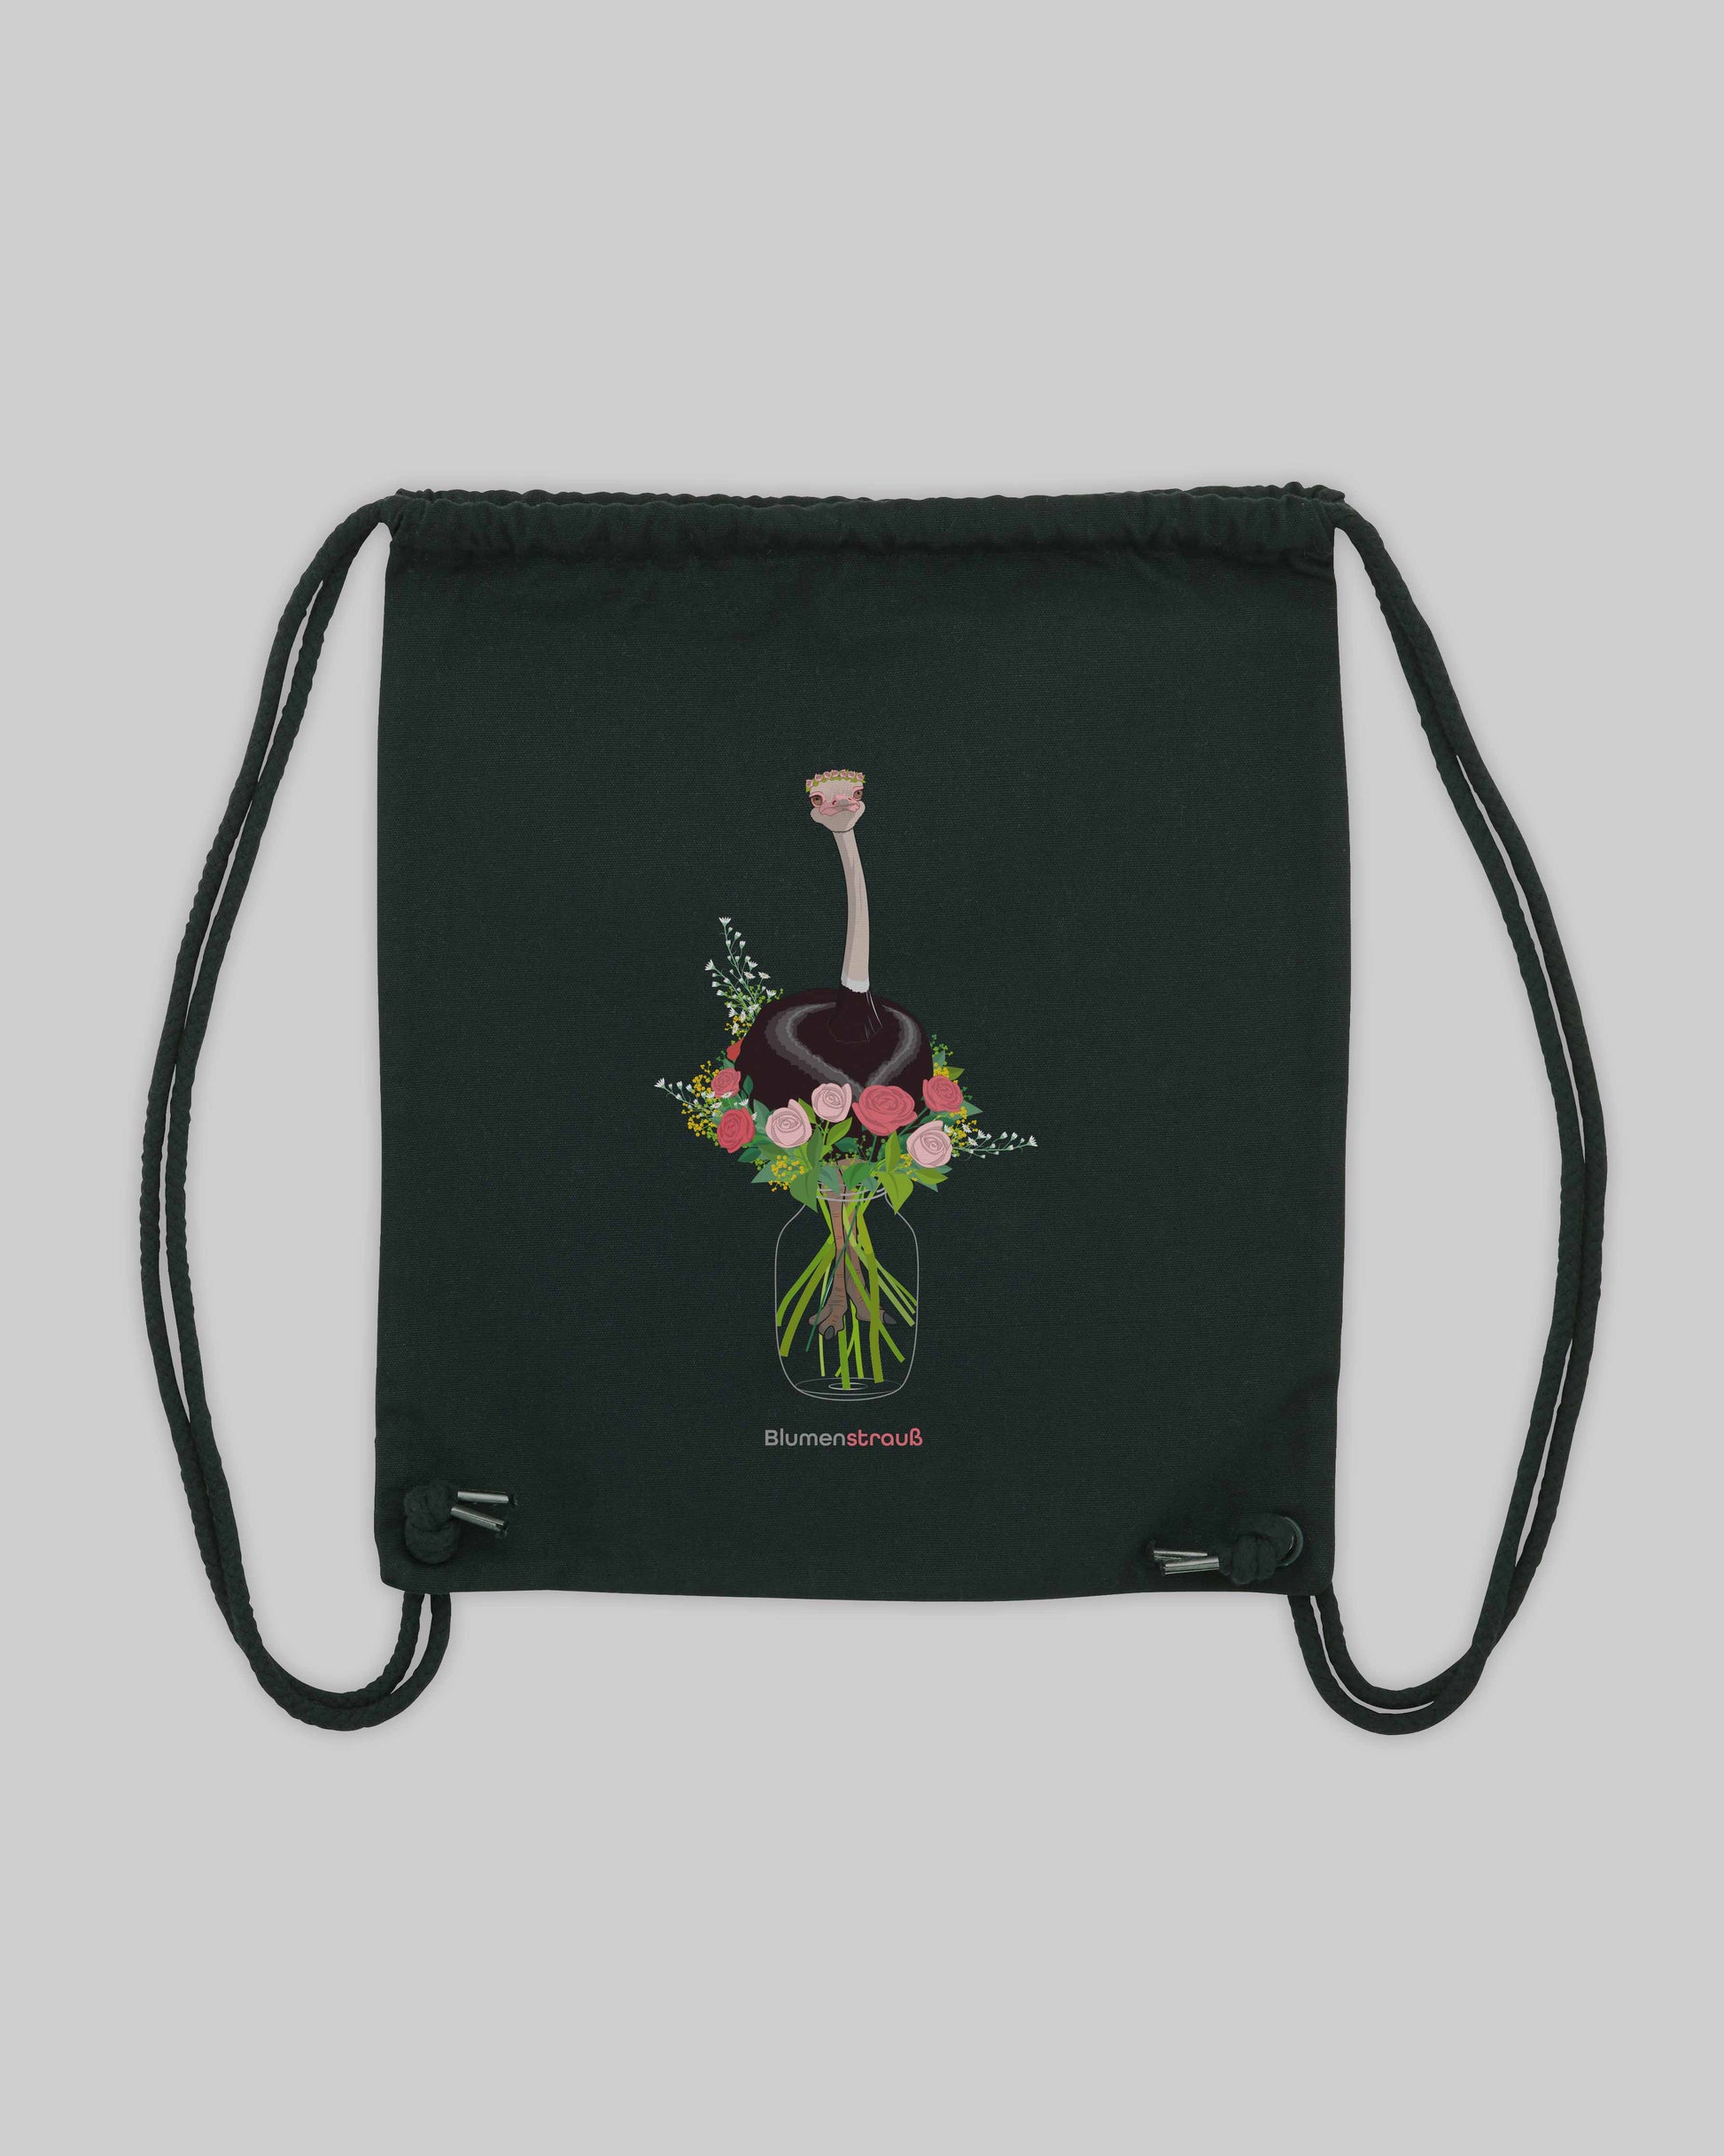 EINHORST® Sportbeutel in Schwarz mit dem Motiv "Blumenstrauß", Bild von Sportbeutel von hinten